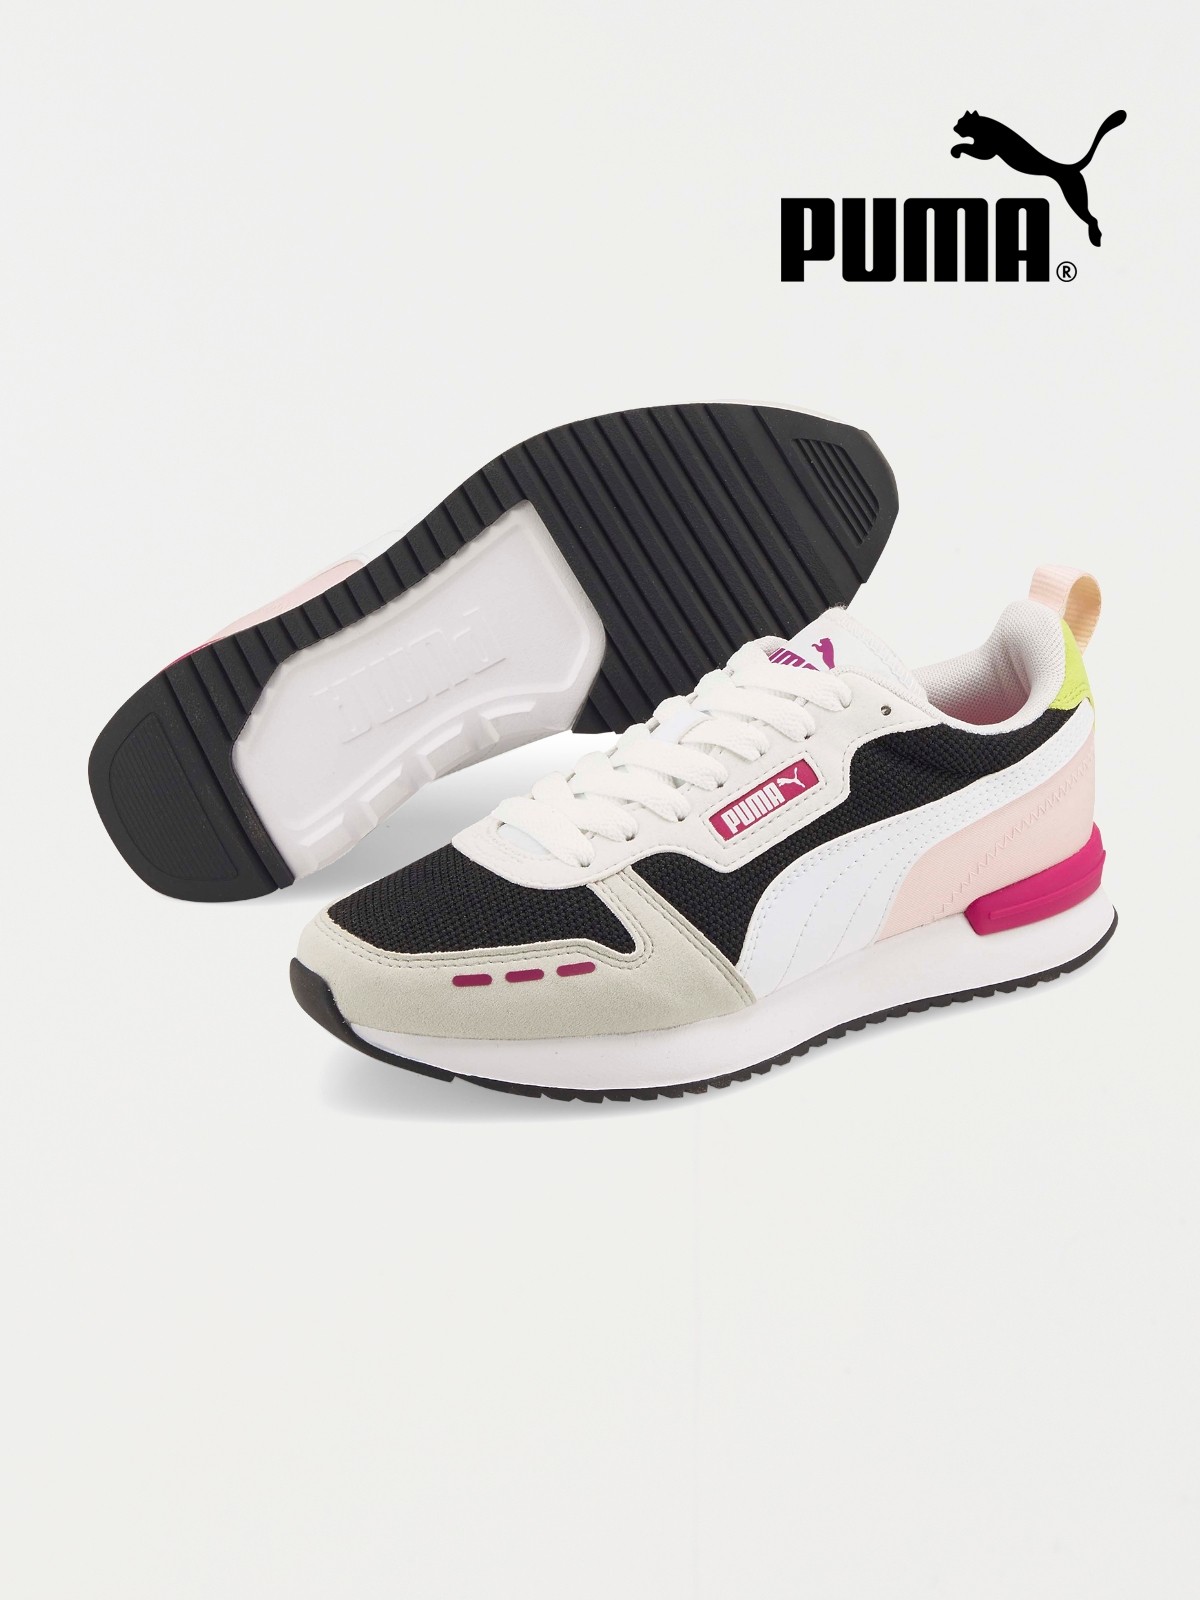 Anual eco Trivial Chaussures de sport femme PUMA (36-41) - DistriCenter